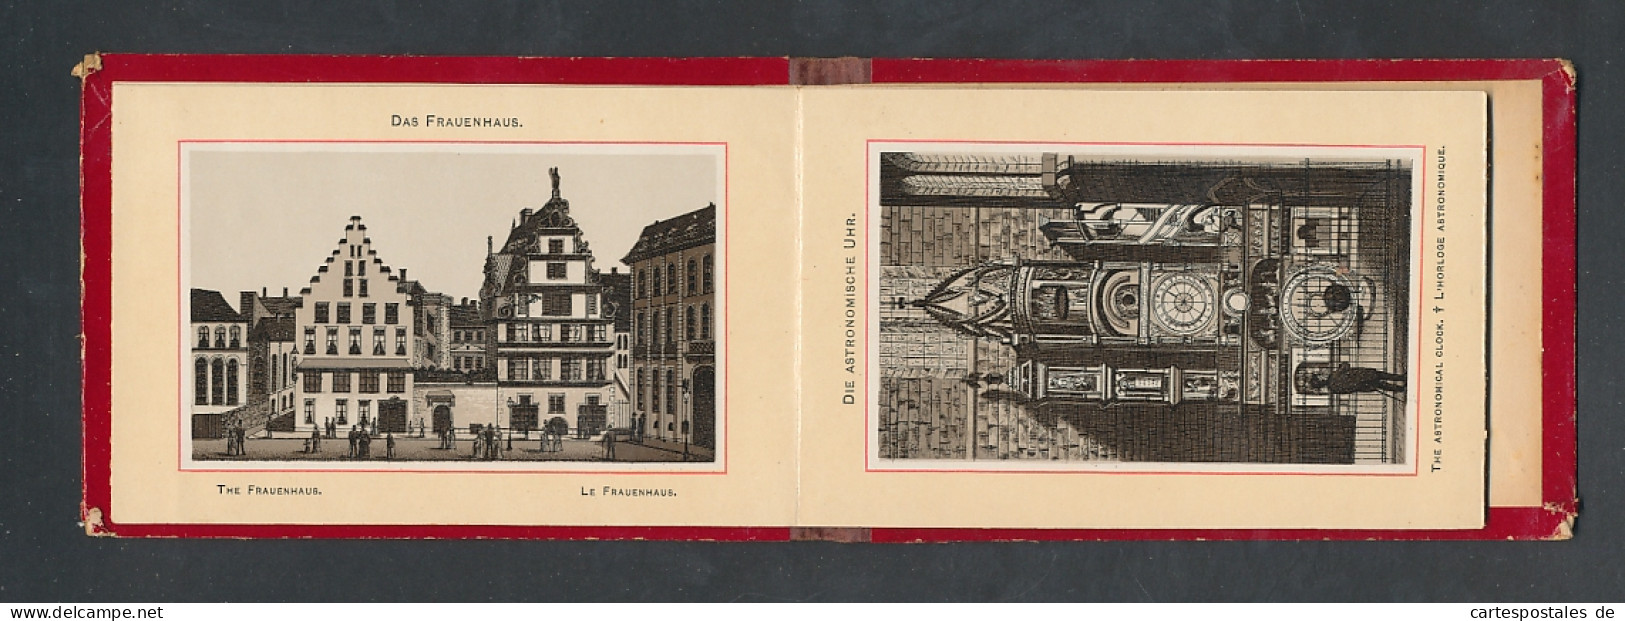 Leporello-Album Strassburg, Lithographien Von Münster, St. Thomas-Kirche, Frauenhaus, Etc.  - Lithographien